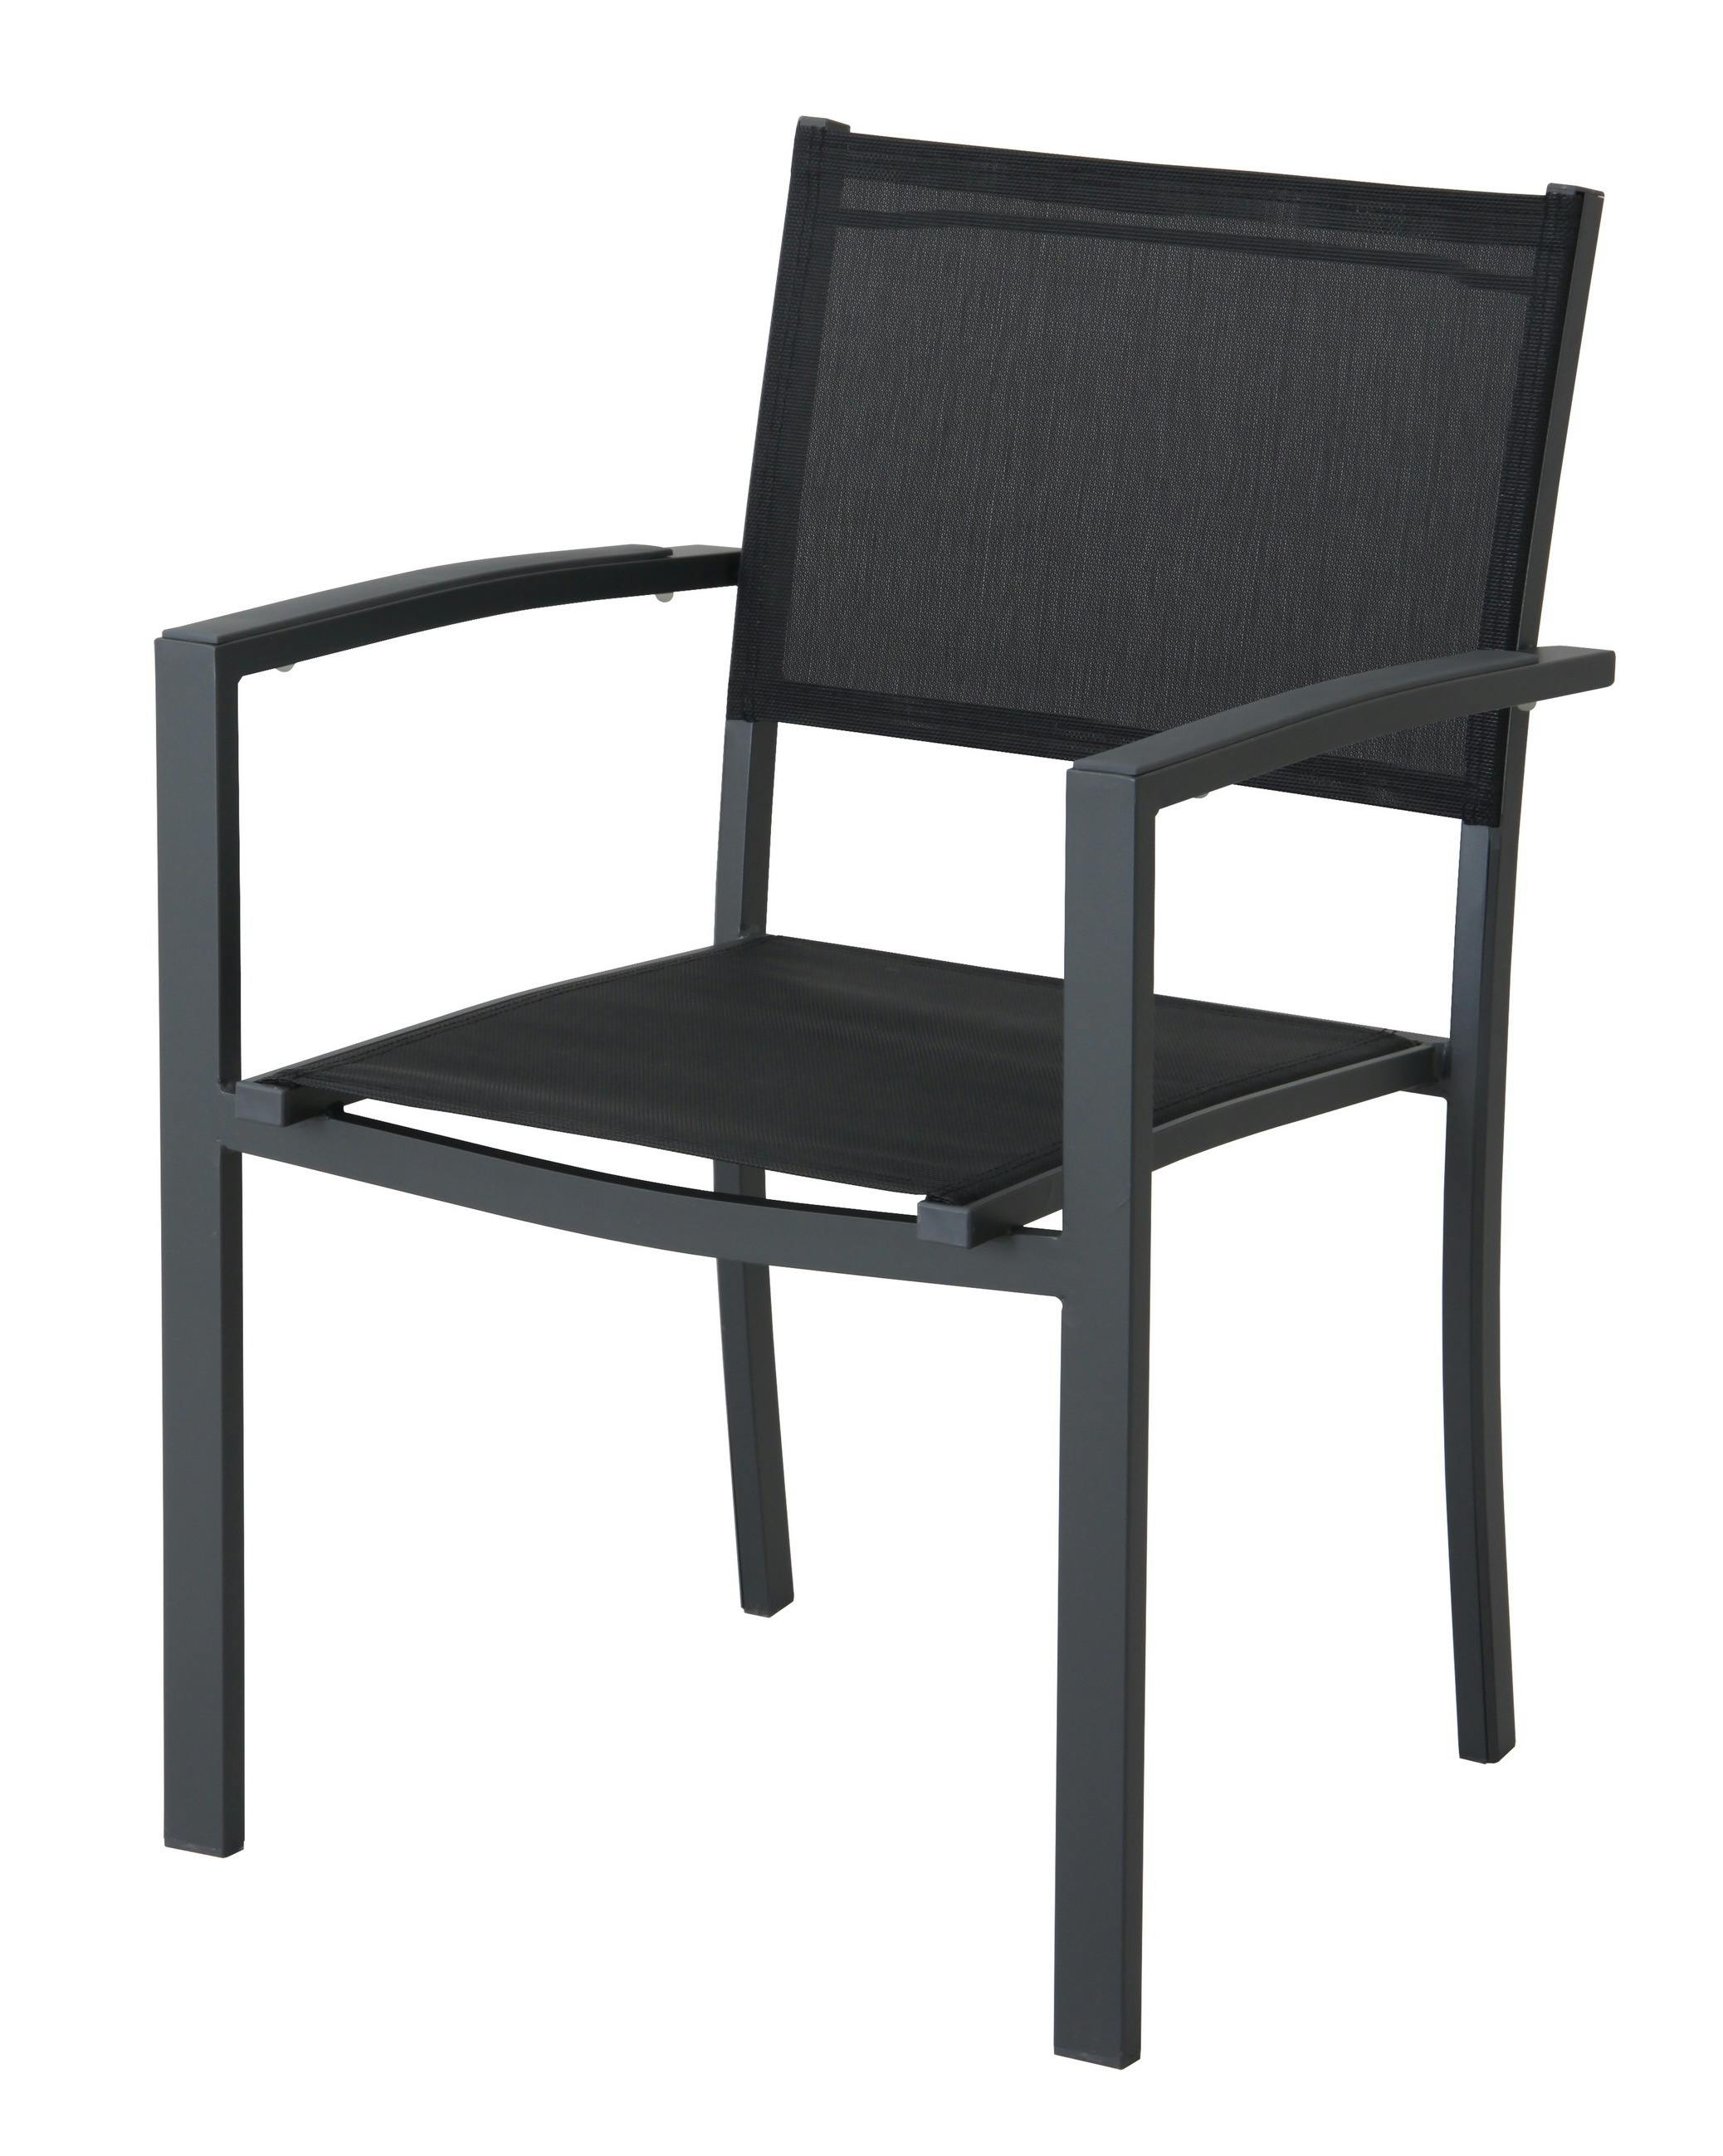 METRO Professional terrasstoel aluminium/ 58,5 59 x 86,5 cm, met armleuningen, stapelbaar, zwart | MAKRO Webshop